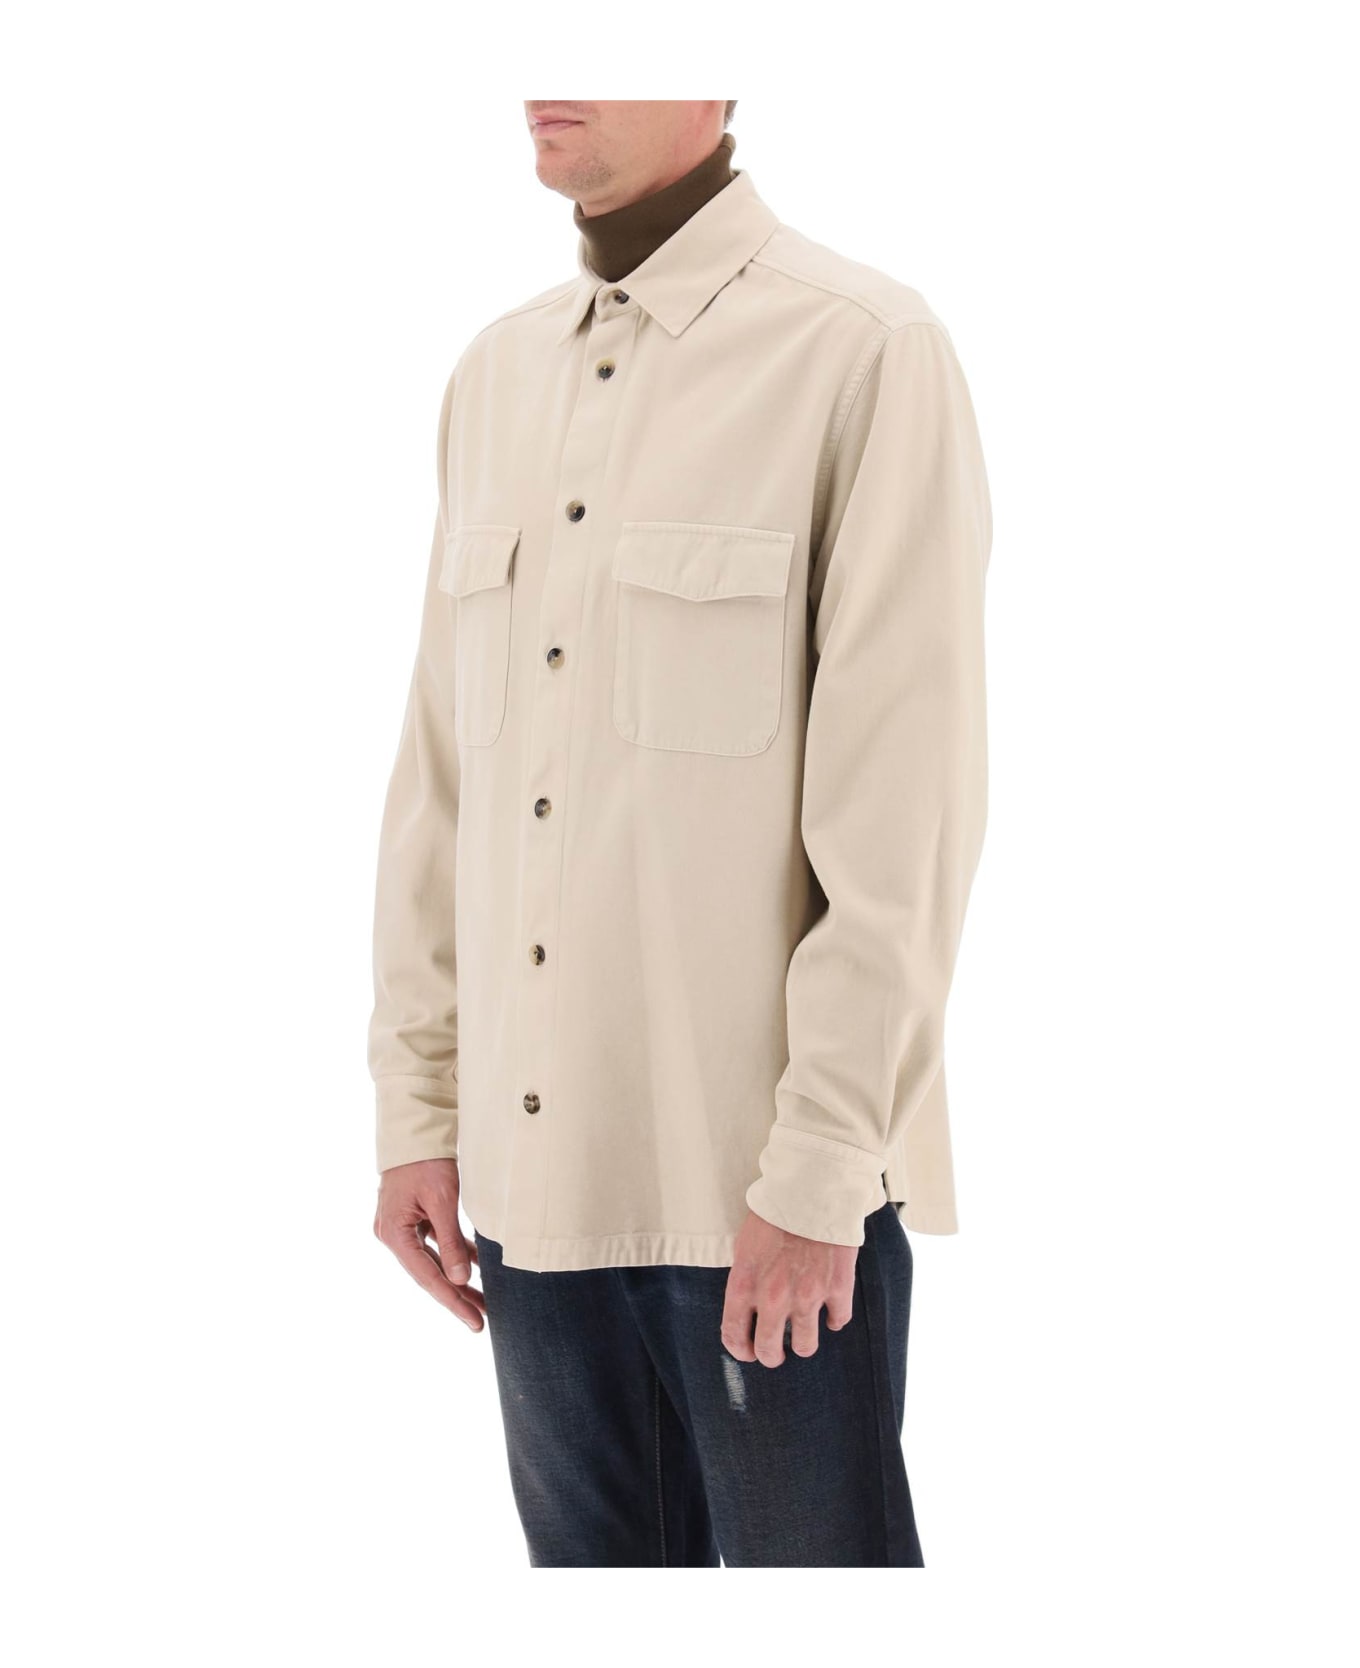 Agnona Cotton & Cashmere Shirt - TUFO (Beige)